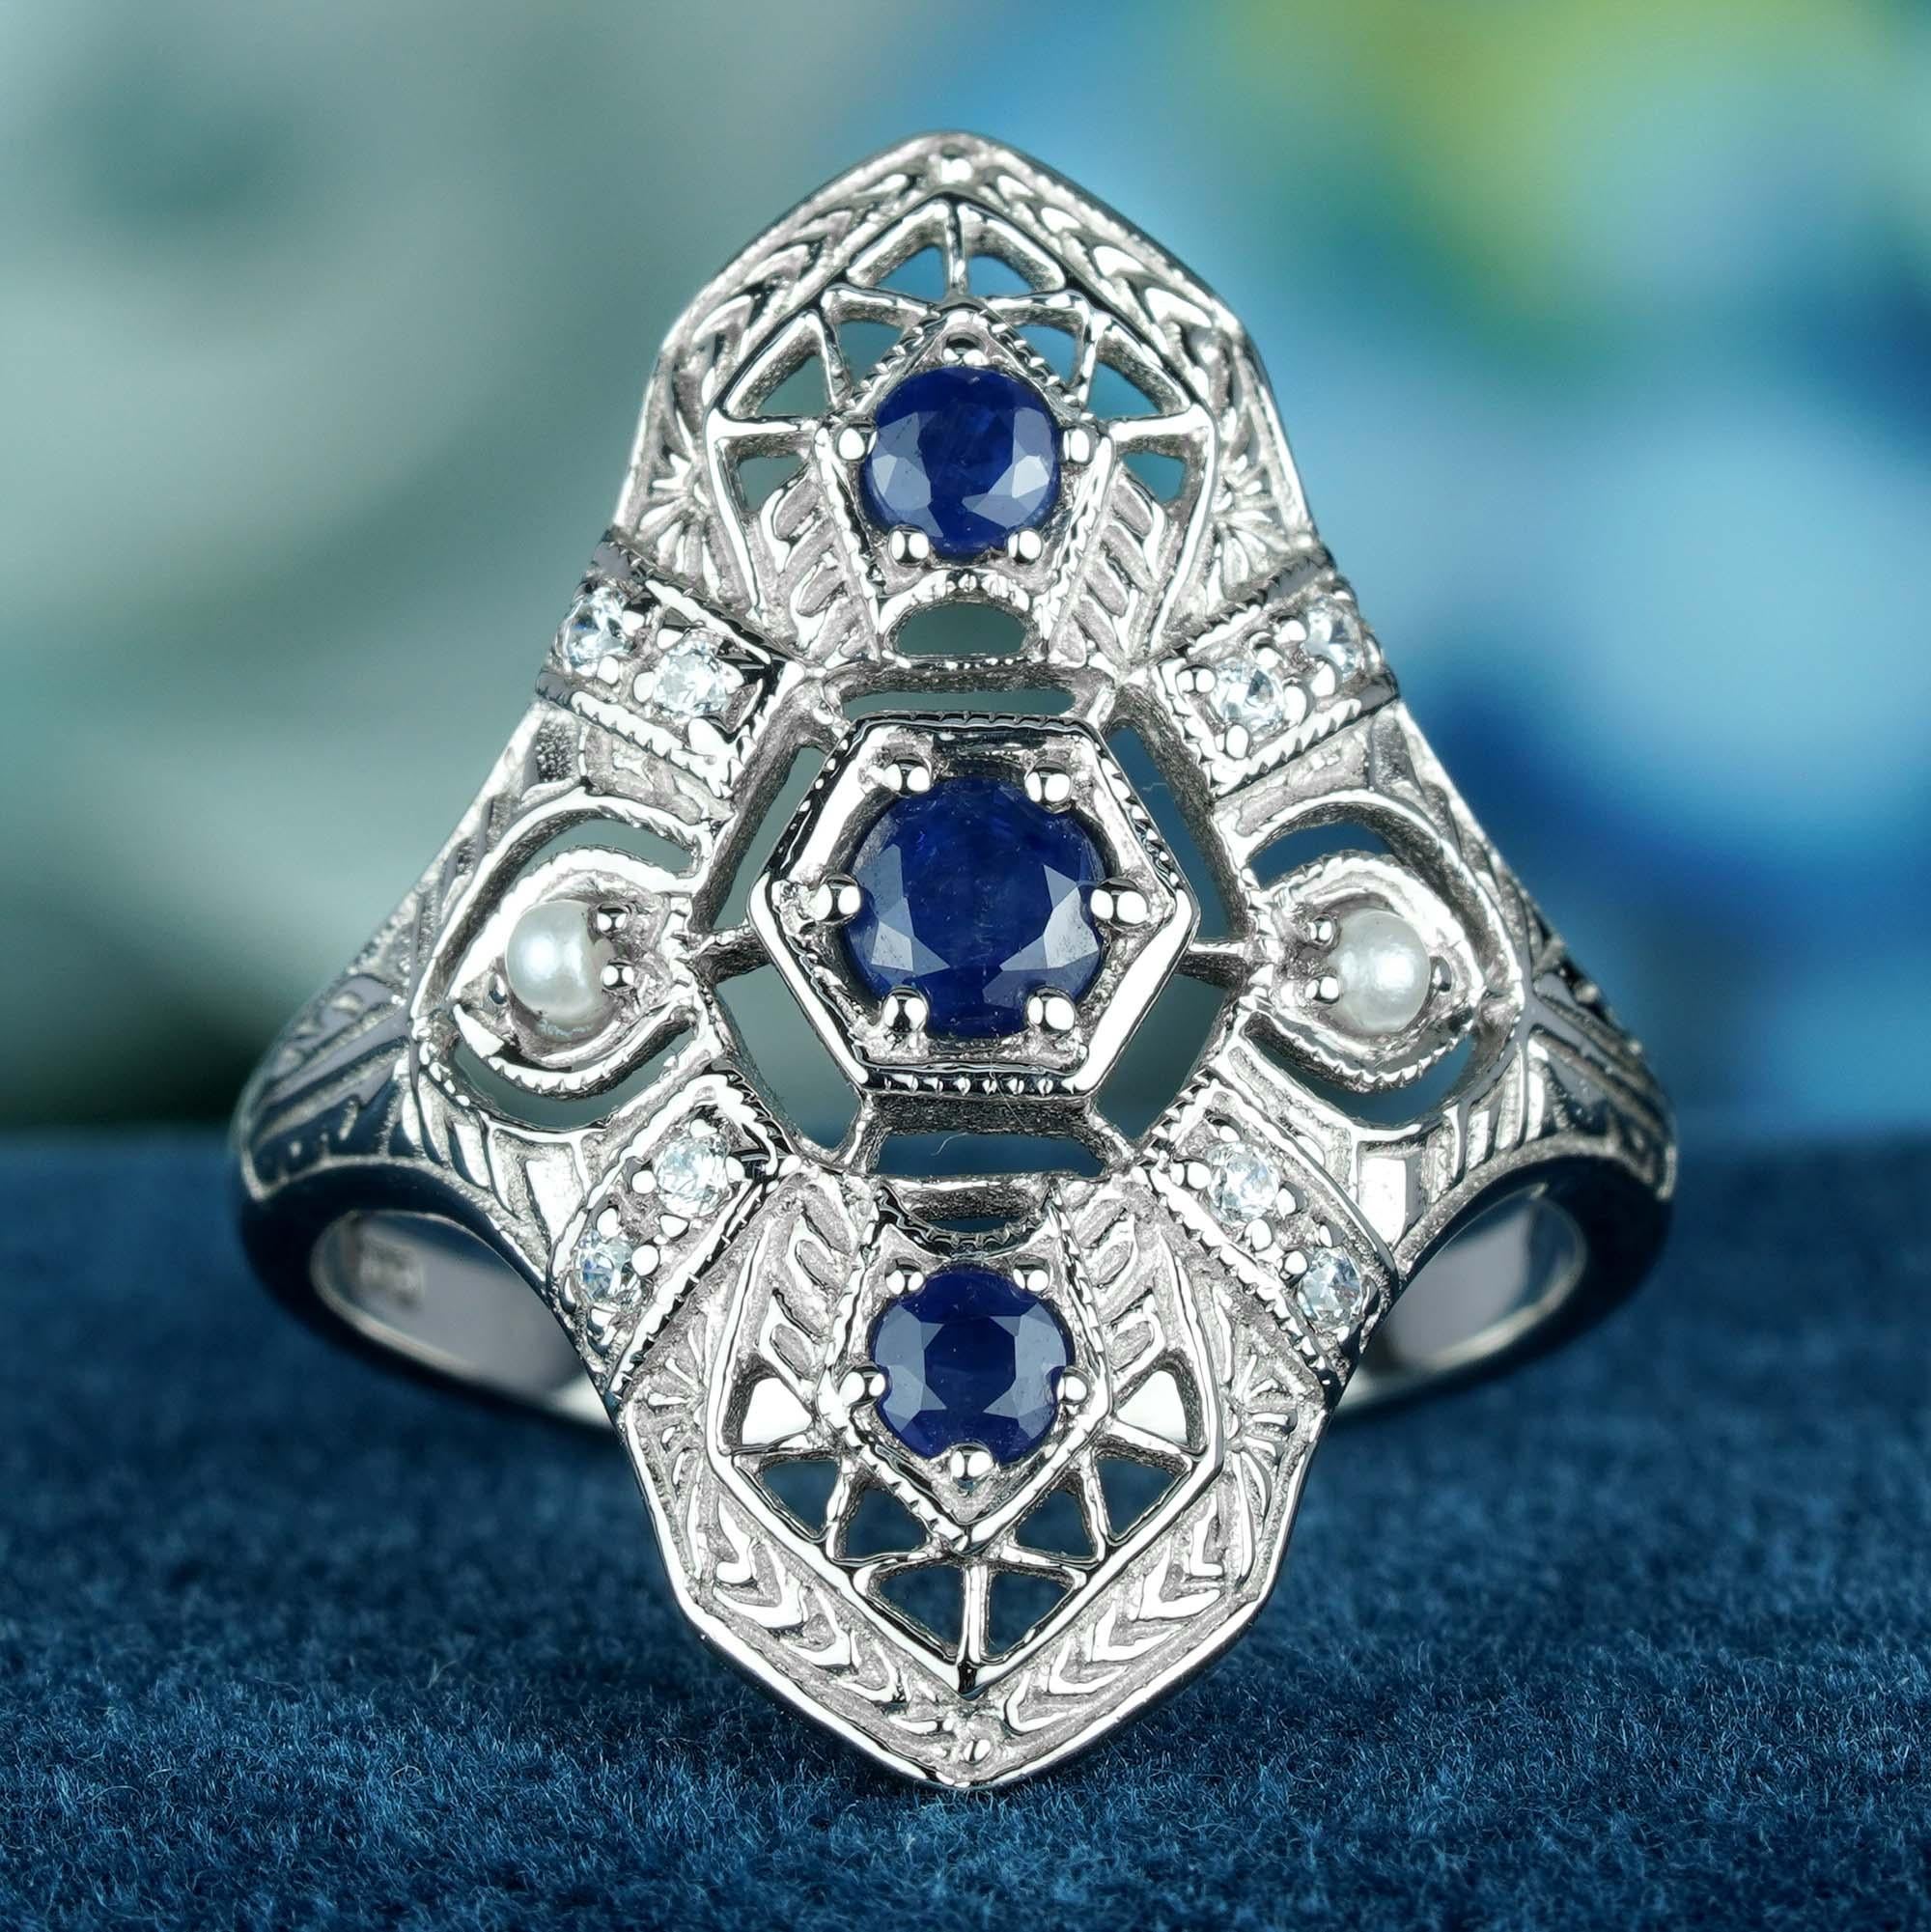 Dieser Ring im Vintage-Stil des Art déco. In der Mitte befinden sich 3 kaskadenförmig angeordnete runde blaue Saphire, die in einer erhöhten Lünette gefasst sind. Zarte Filigranarbeiten schmücken das massive Weißgoldband und die Schultern und